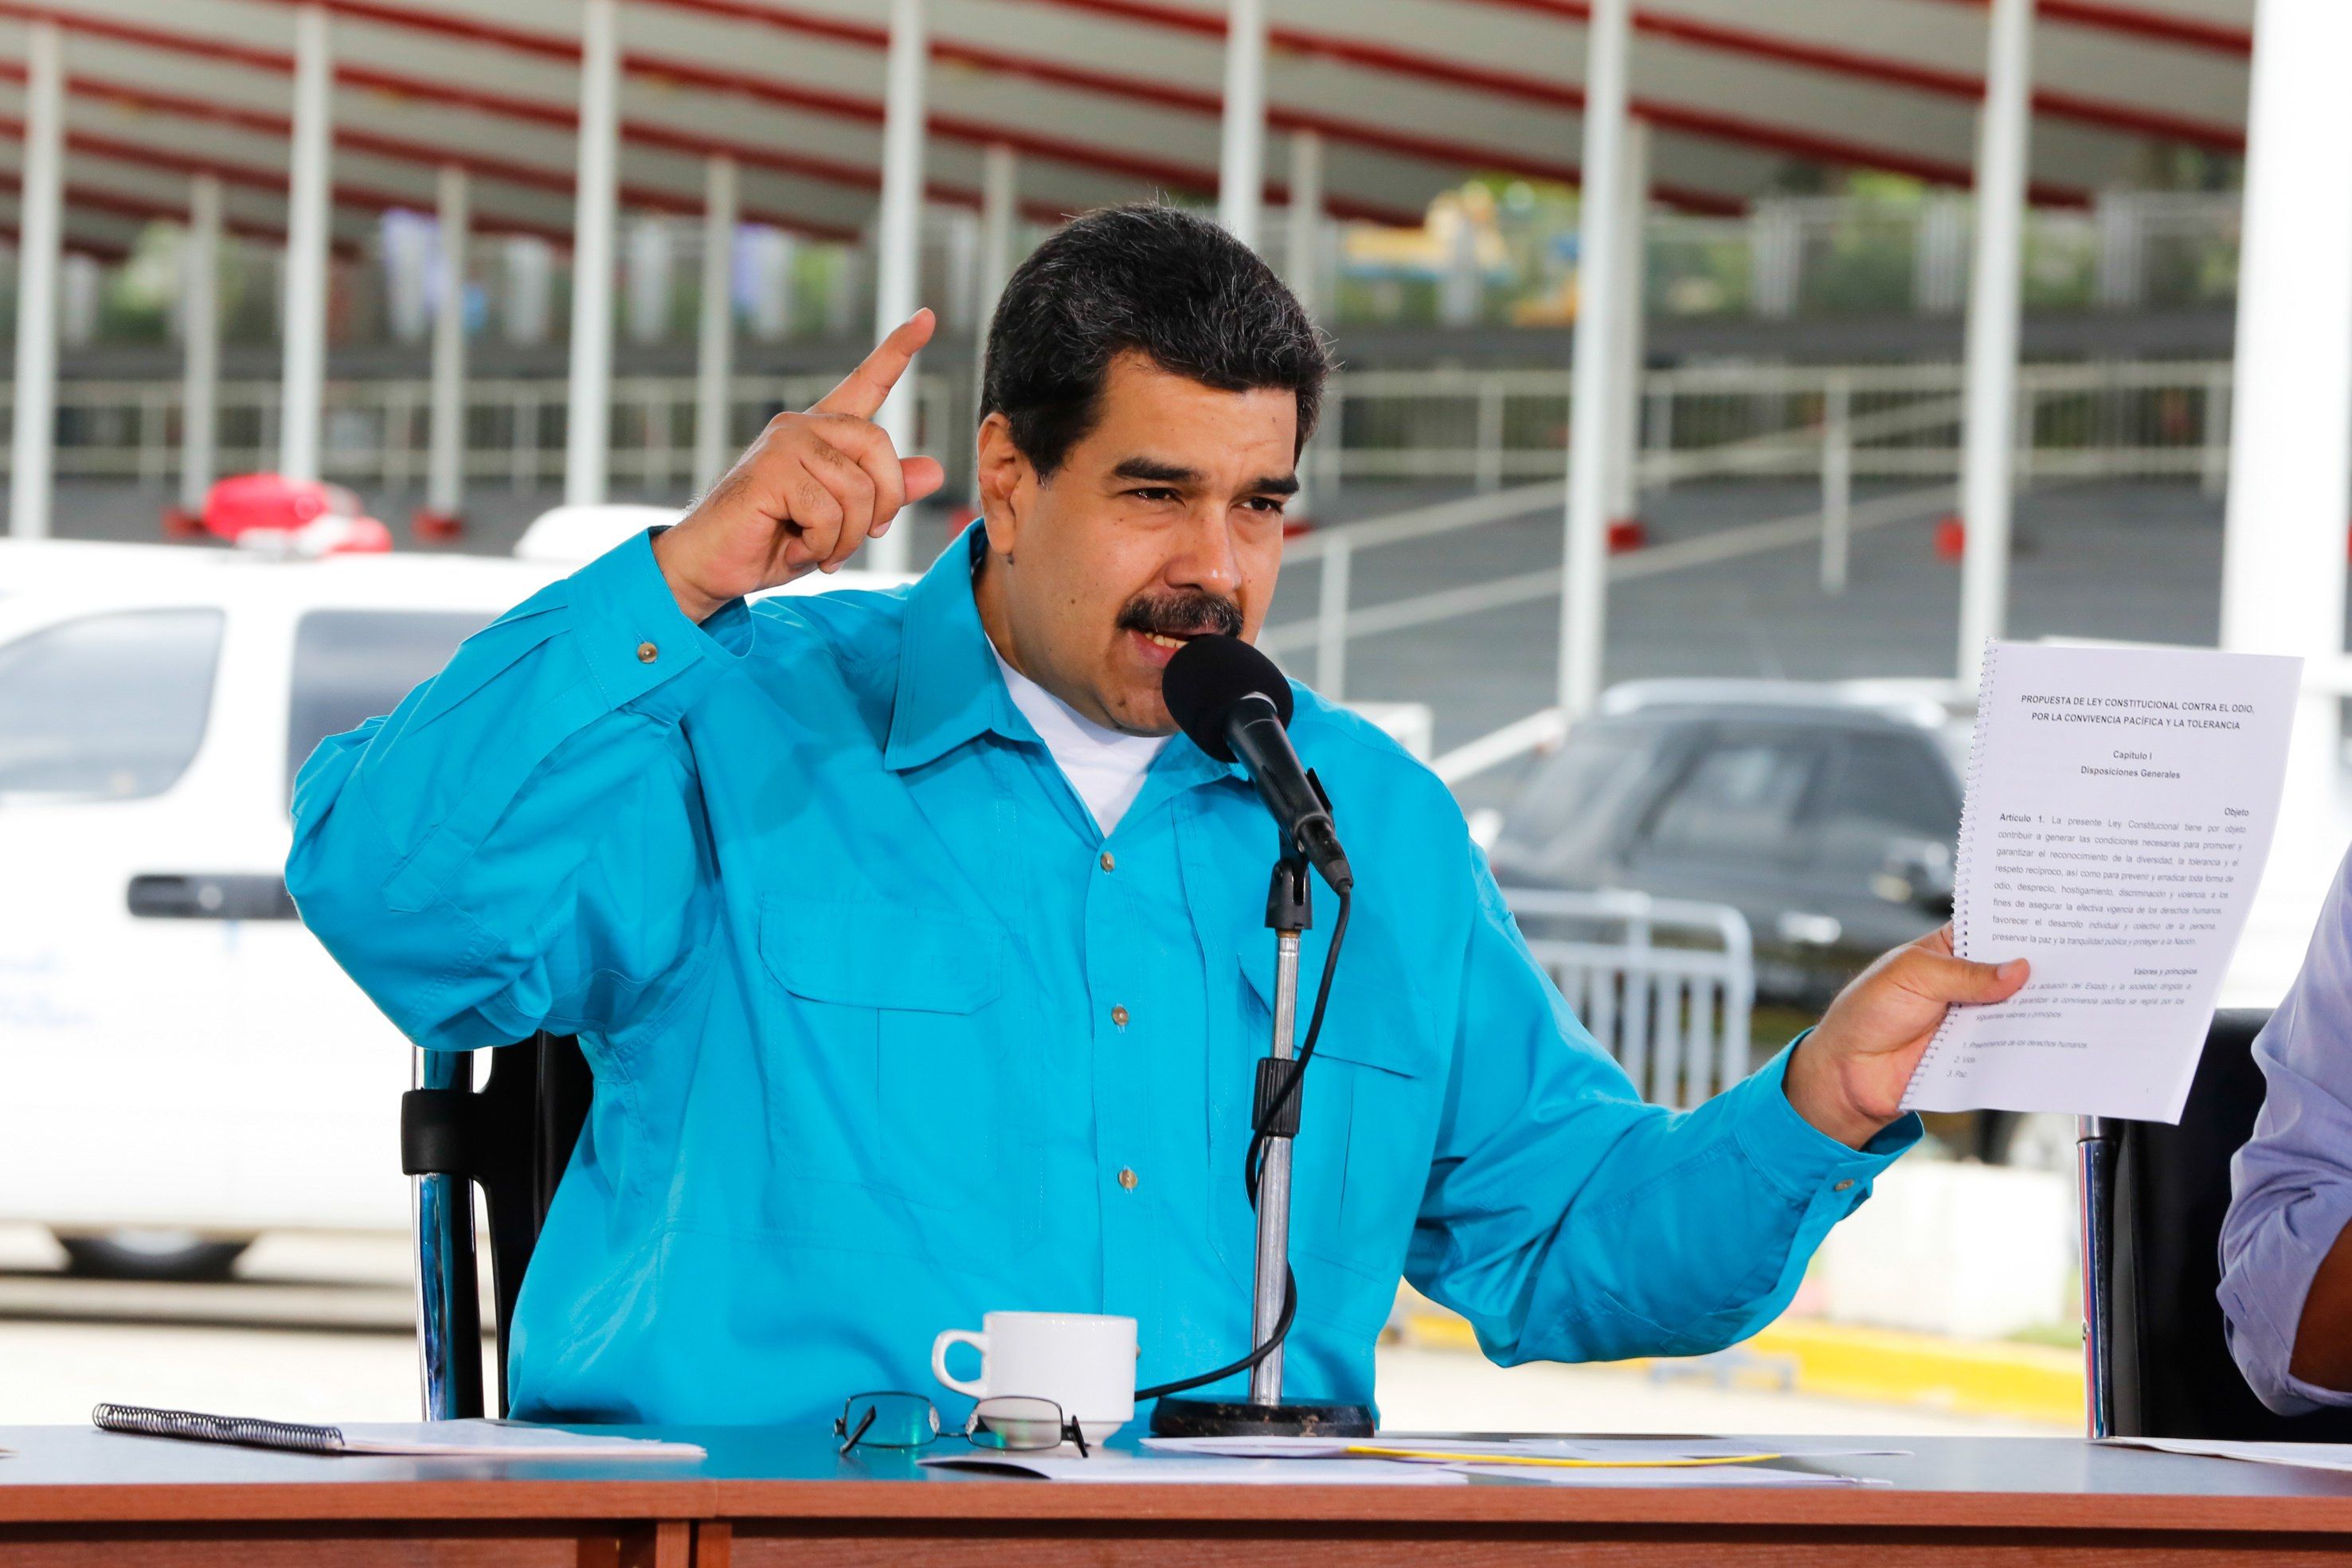 Nicolas Maduro egy kormányzati eseményen beszél Caracasban, Venezuelában 2017. november 2-án az adósság refinanszírozásáról és átstrukturálásáról. EPA/PRENSA MIRAFLORES HANDOUT HANDOUT EDITORIAL USE ONLY/NO SALES